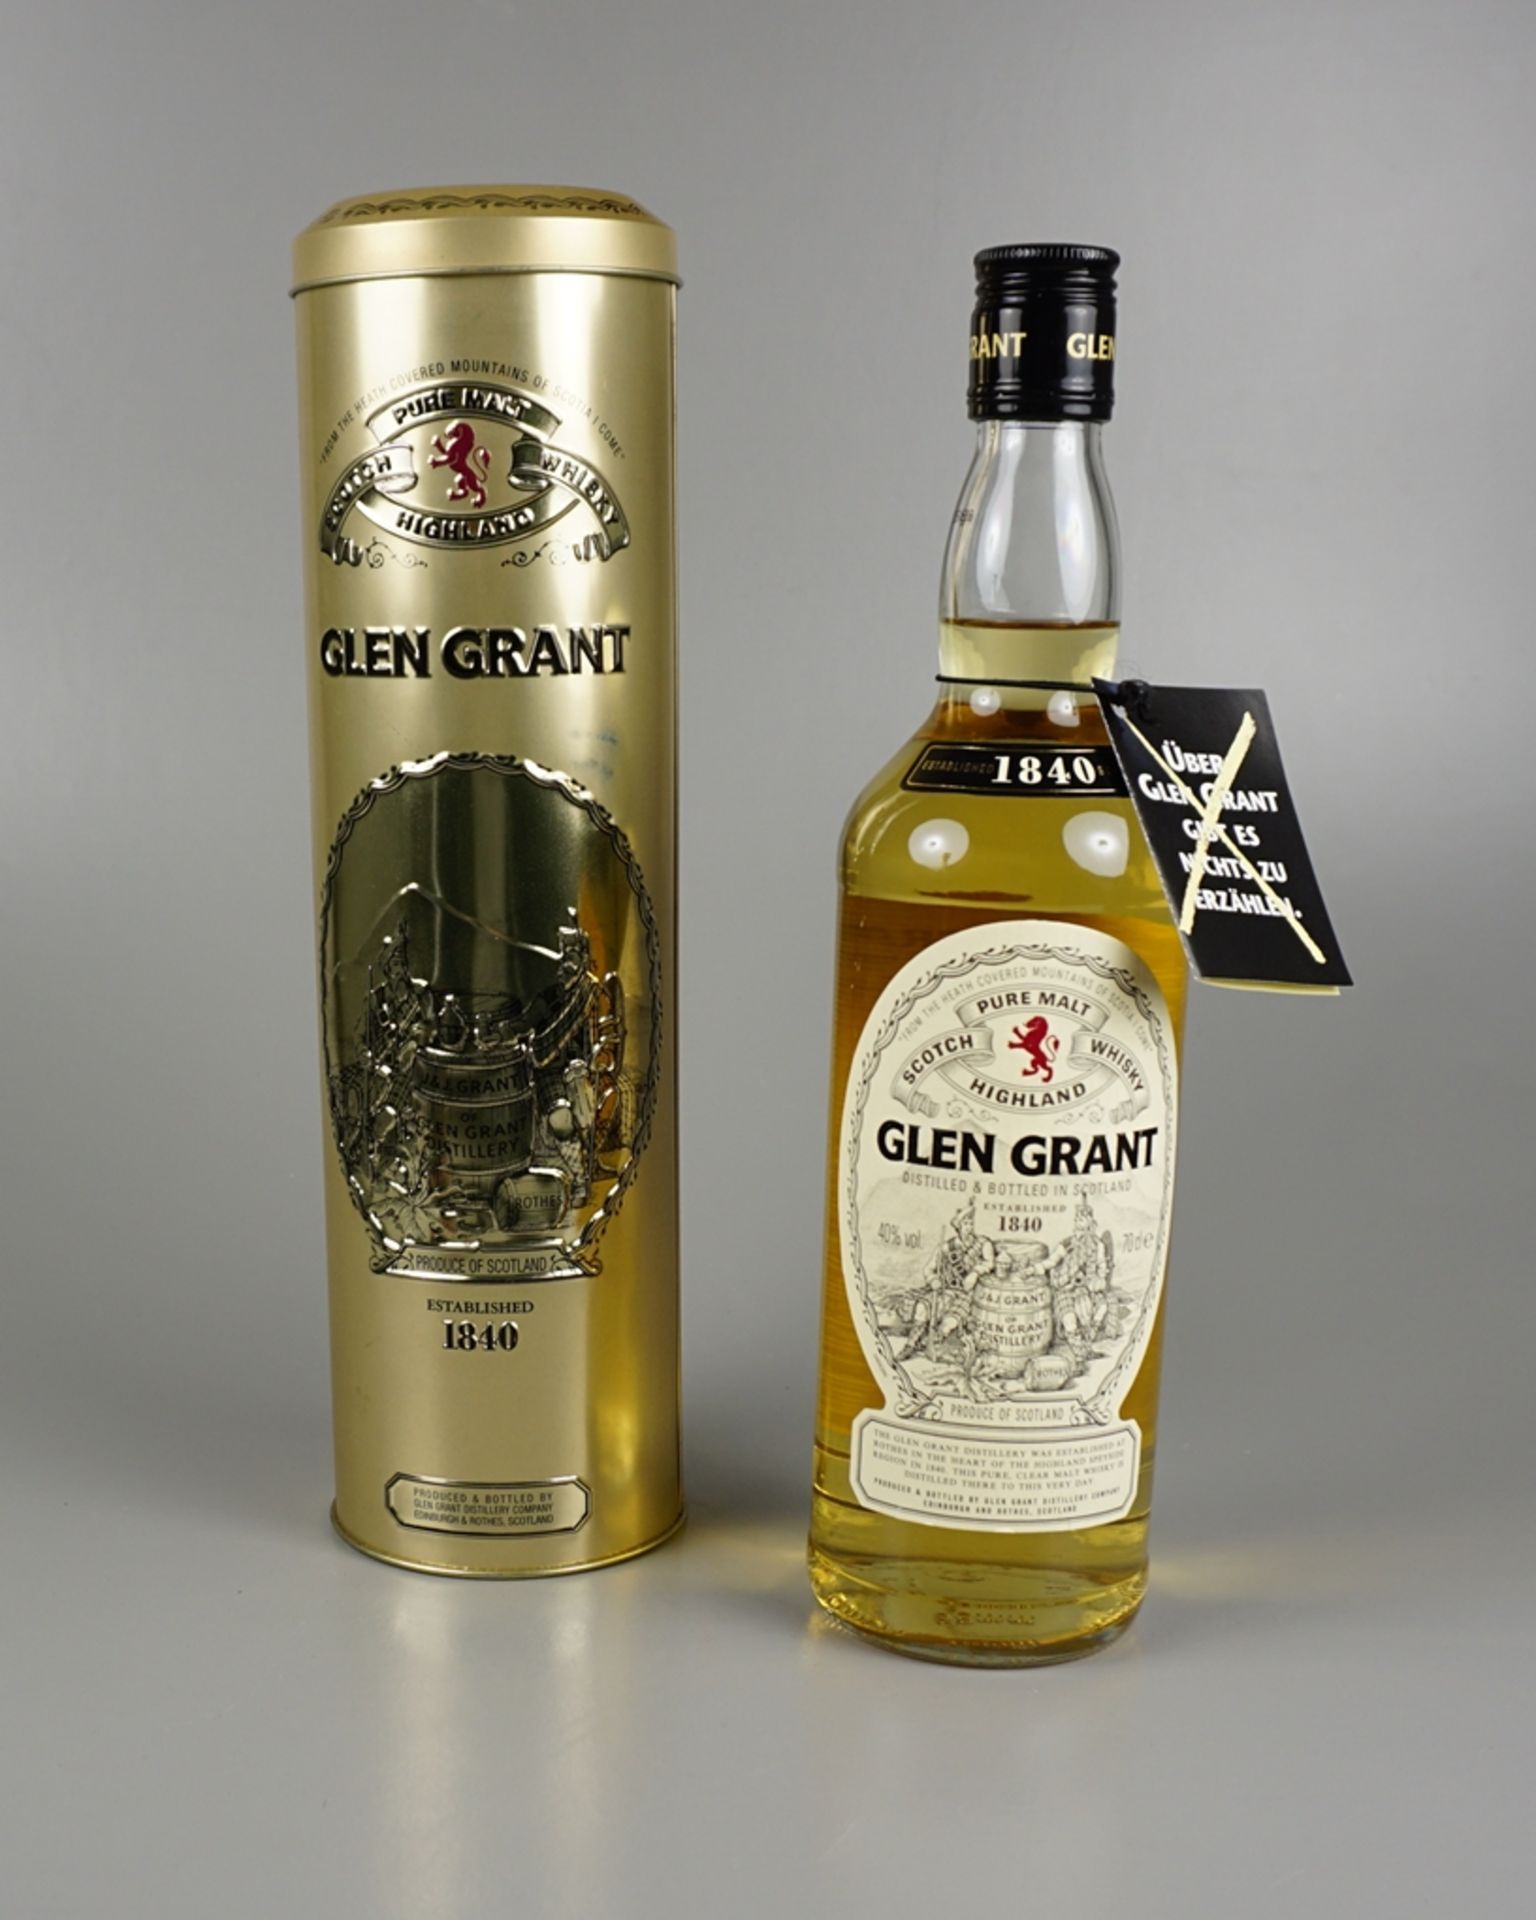 Glen Grant Pure Malt Scotch Whisky, Highland, Schottland, mit exklusiver Metallbox